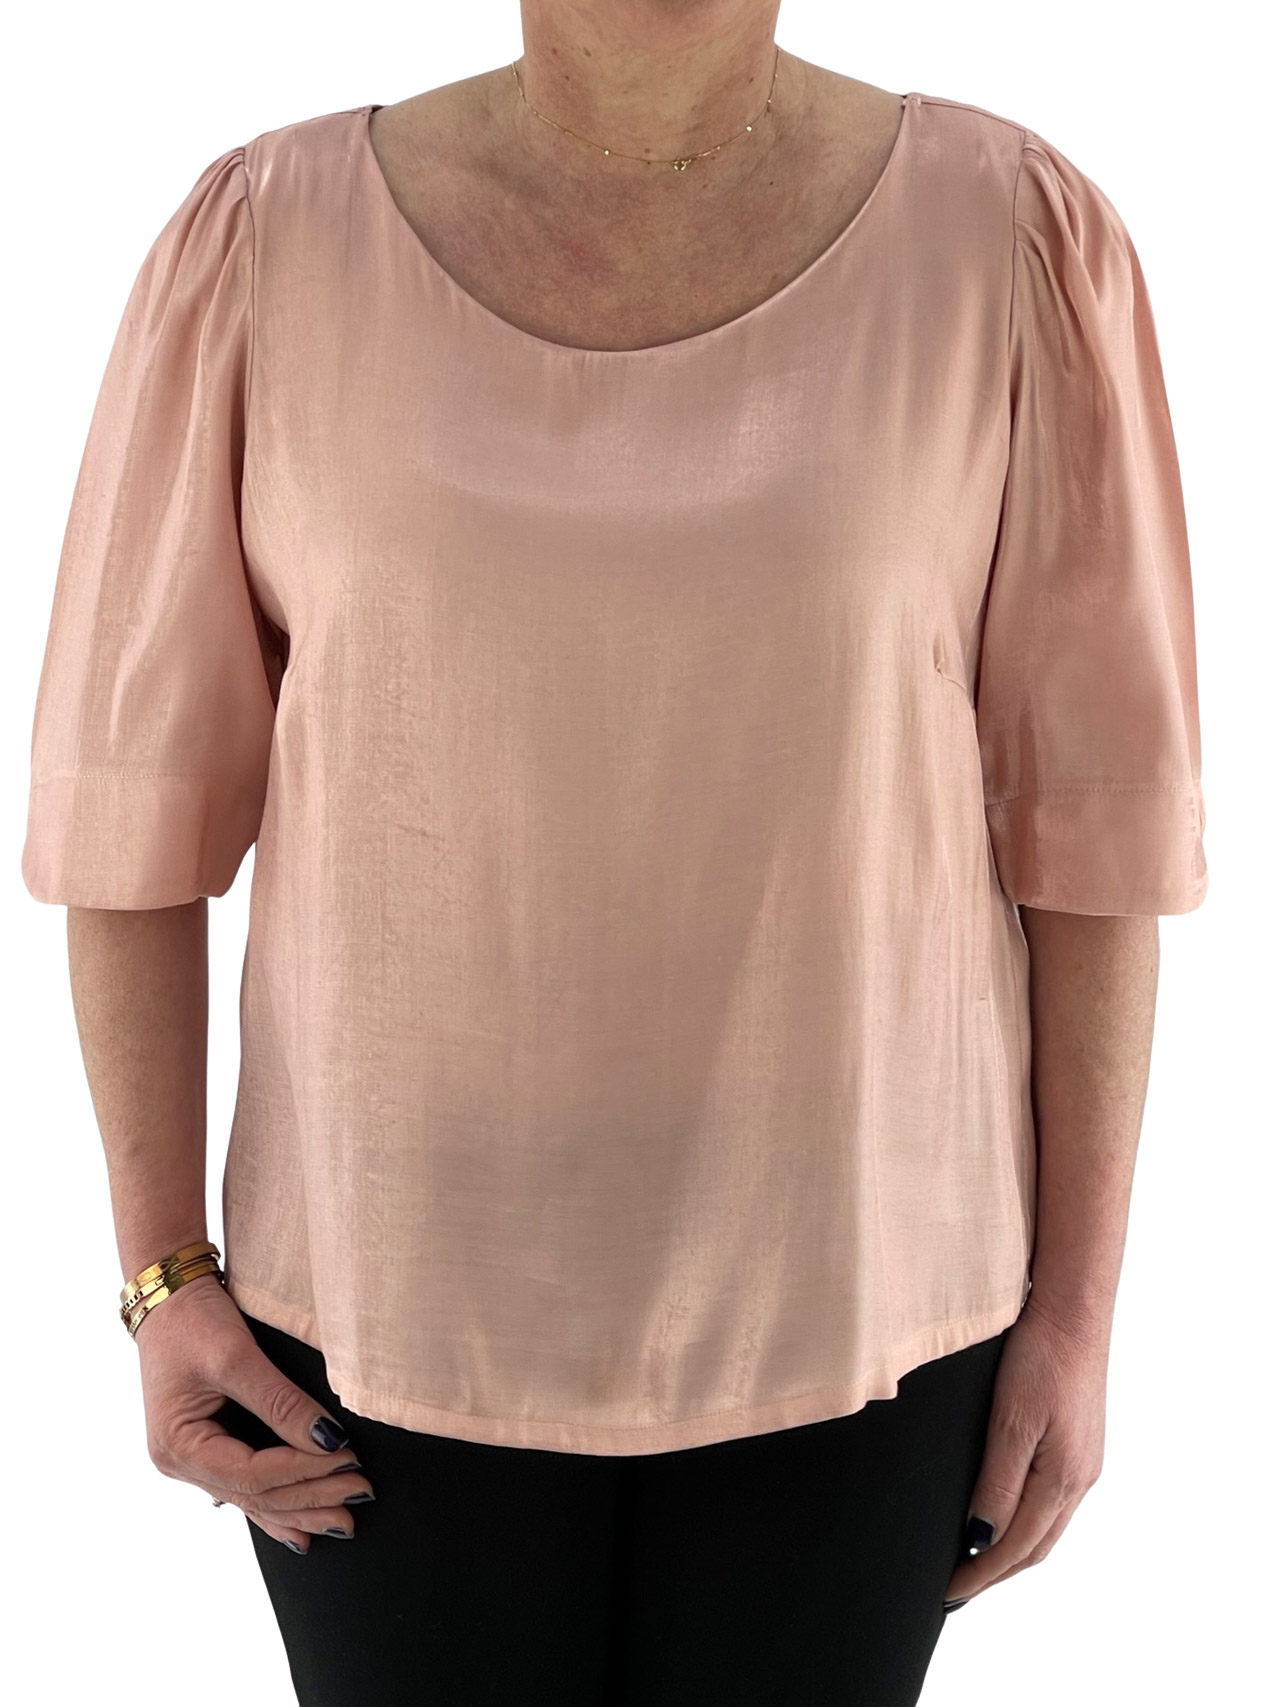 Μπλούζα γυναικεία μονόχρωμη με πιετάκια στους ώμους κωδ. MB33510 μπροστινή όψη ροζ